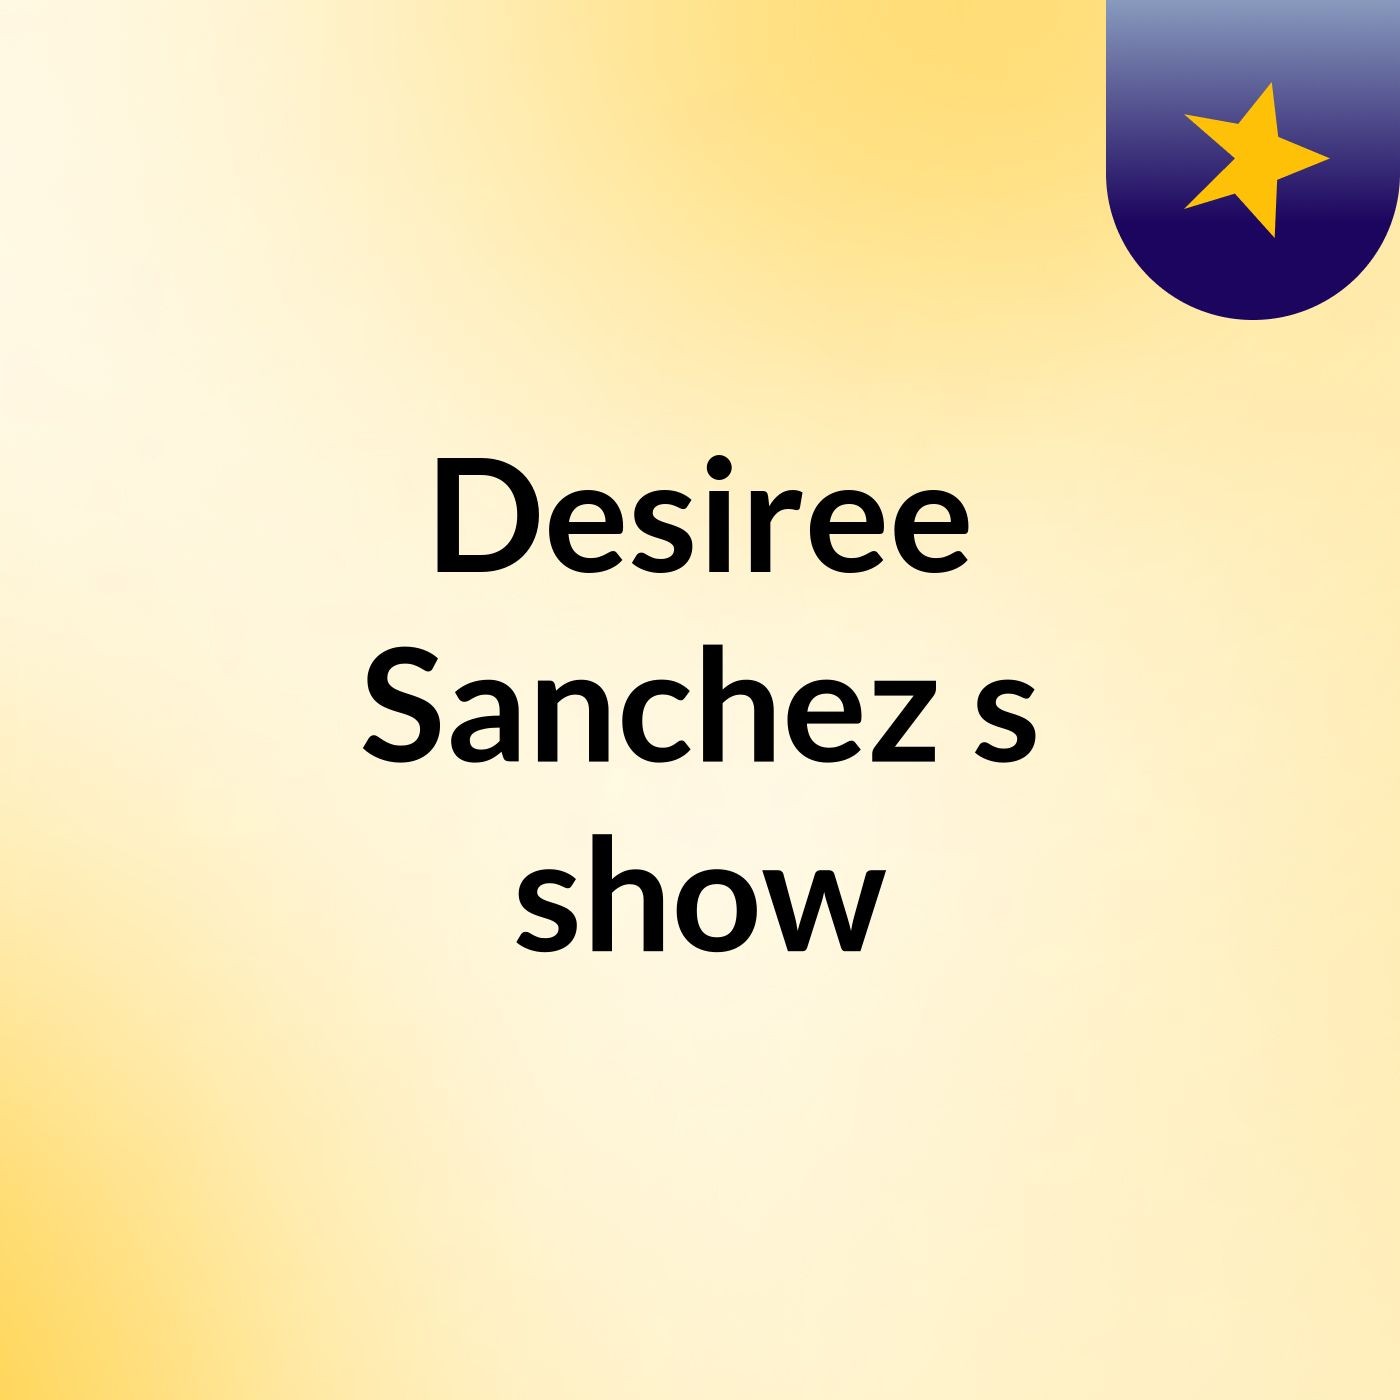 Desiree Sanchez's show